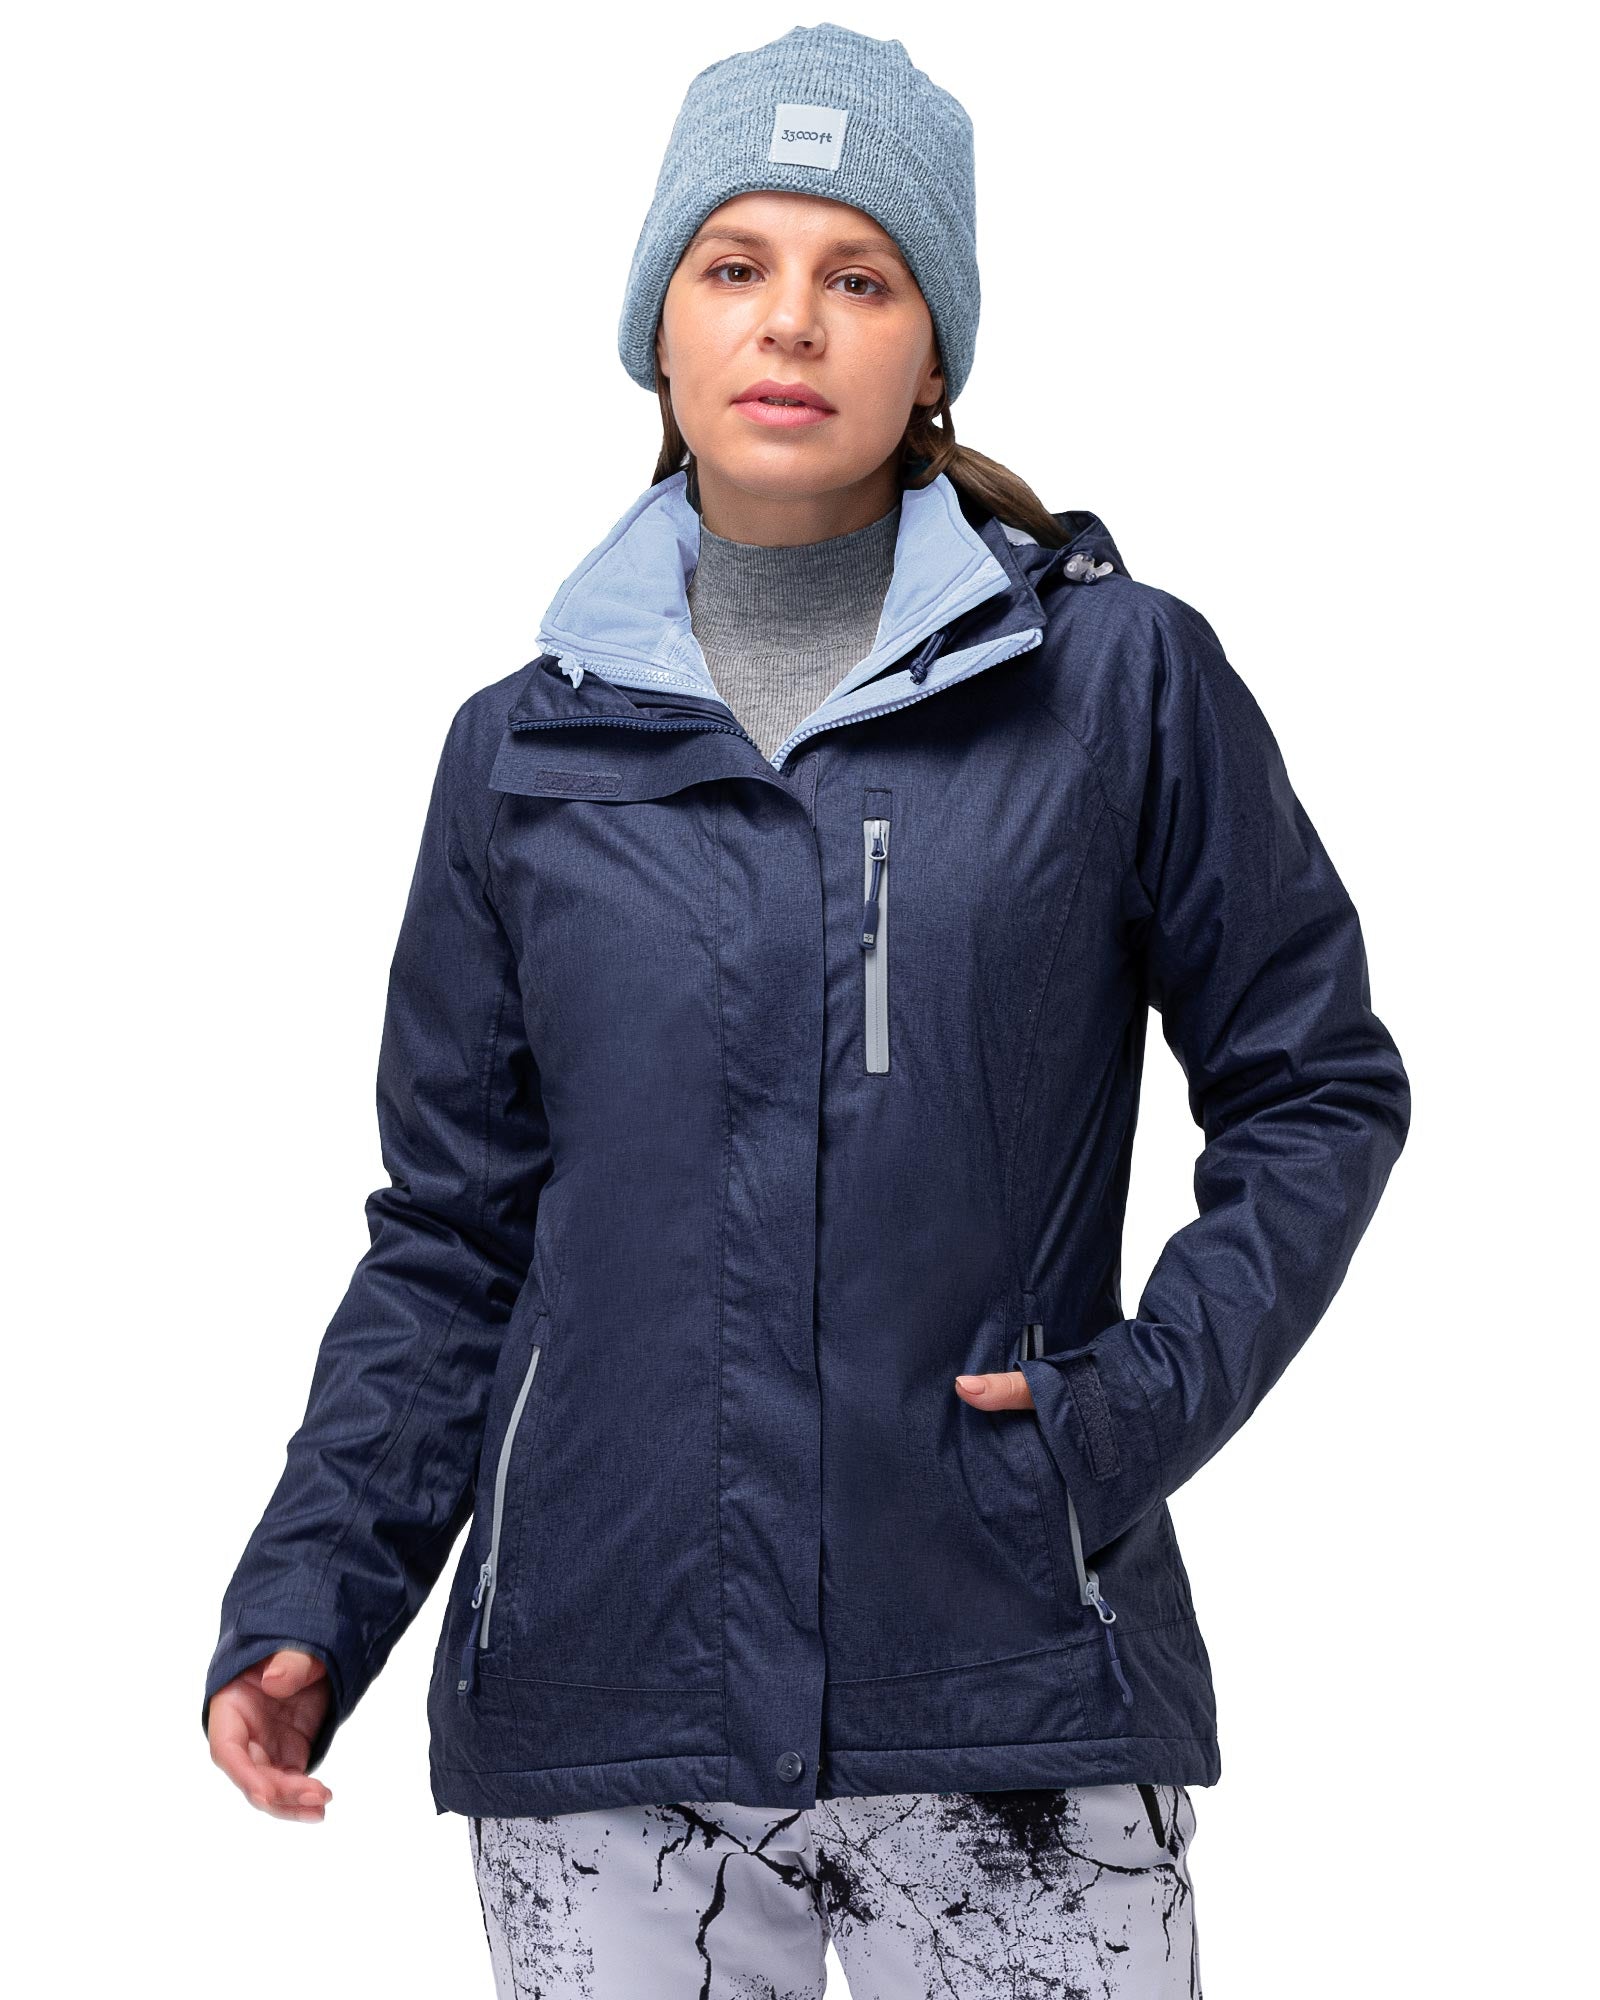 Women's Fleece Lined Rain Jacket